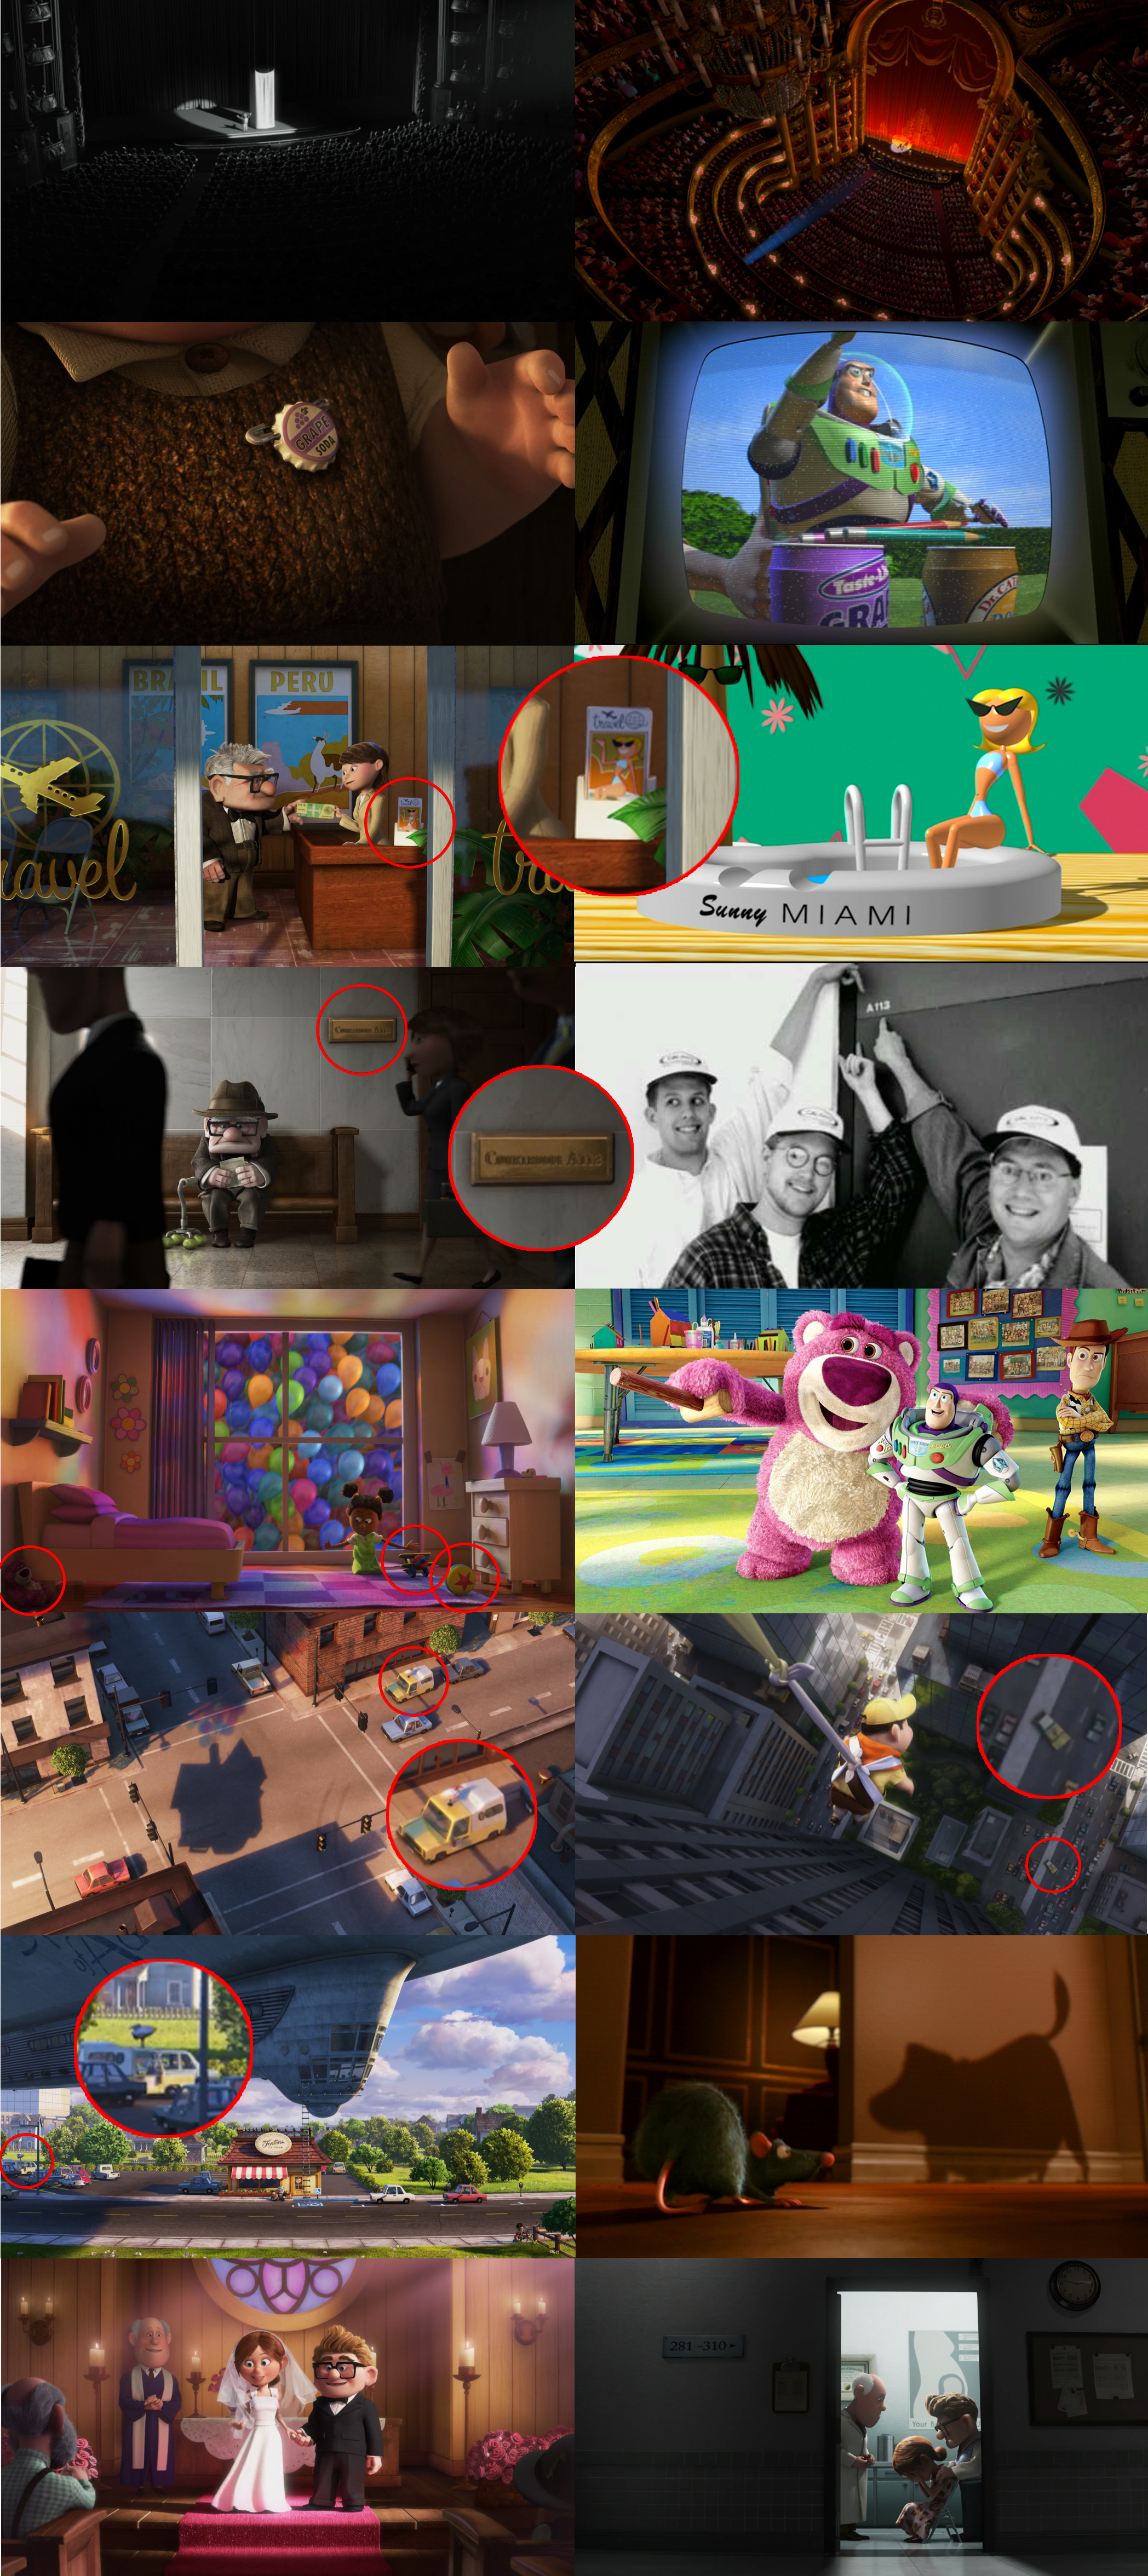 Legenda das fotos, da esquerda pra direita e de cima pra baixo: (Foto 1) Charles Muntz apresenta o esqueleto no palco; (Foto 2) O palco usado em Up é o mesmo do curta Presto (2008); (Foto 3) Tampinha de Grape Soda no peito de Carl; (Foto 4) A marca Grape Soda foi usada na latinha no comercial do Buzz Lightyear em Toy Story; (Foto 5) Carl na agência de viagens, destaque para o display sobre o balcão; (Foto 6) A garota da foto é a mesma usada no curta Knick Knack (1989); (Foto 7) Carl no tribunal. Destaque para a placa que indica Courtroom A113; (Foto 8) A113 é o número da sala de aula do Instituto de Artes da Califórnia (CalArts, dá até pra ver o nome nos seus bonés), onde vários grandes animadores aprenderam a animar. Na foto estão Pete Docter (à esquerda), diretor de Up, Monstros S.A. (2001), e Divertida Mente (2015), Andrew Stanton (meio), diretor de Procurando Nemo (2003), Wall-E (2008), e Procurando Dory (2016), e John Lassater (à direita), diretor de Toy Story, Vida de Inseto, e Carros (2006) (Foto 9) Quarto de uma menina. Destaque para o urso de pelúcia à esquerda, o avião de brinquedo que aparece em Toy Story quando Buzz “prova” que sabe voar, e a bola do curta Luxo Jr; (Foto 10) Lotso, o antagonista de Toy Story 3 (2010) é o urso de pelúcia que aparece no quarto da menina em Up; (Foto 11) Primeira aparição do carro do Pizza Planet; (Foto 12) Segunda aparição do carro do Pizza Planet; (Foto 13) Terceira aparição do carro do Pizza Planet; (Foto 14) Cena de Ratatouille (2007), onde aparece a sombra de Dug; (Foto 15) Casamento de Carl e Ellie, reparem no padre; (Foto 16) Ellie recebe a notícia de que não pode engravidar. Seu médico é também o padre que realizou seu casamento, ou seu irmão gêmeo. Isso é mais uma curiosidade do que um easter egg.